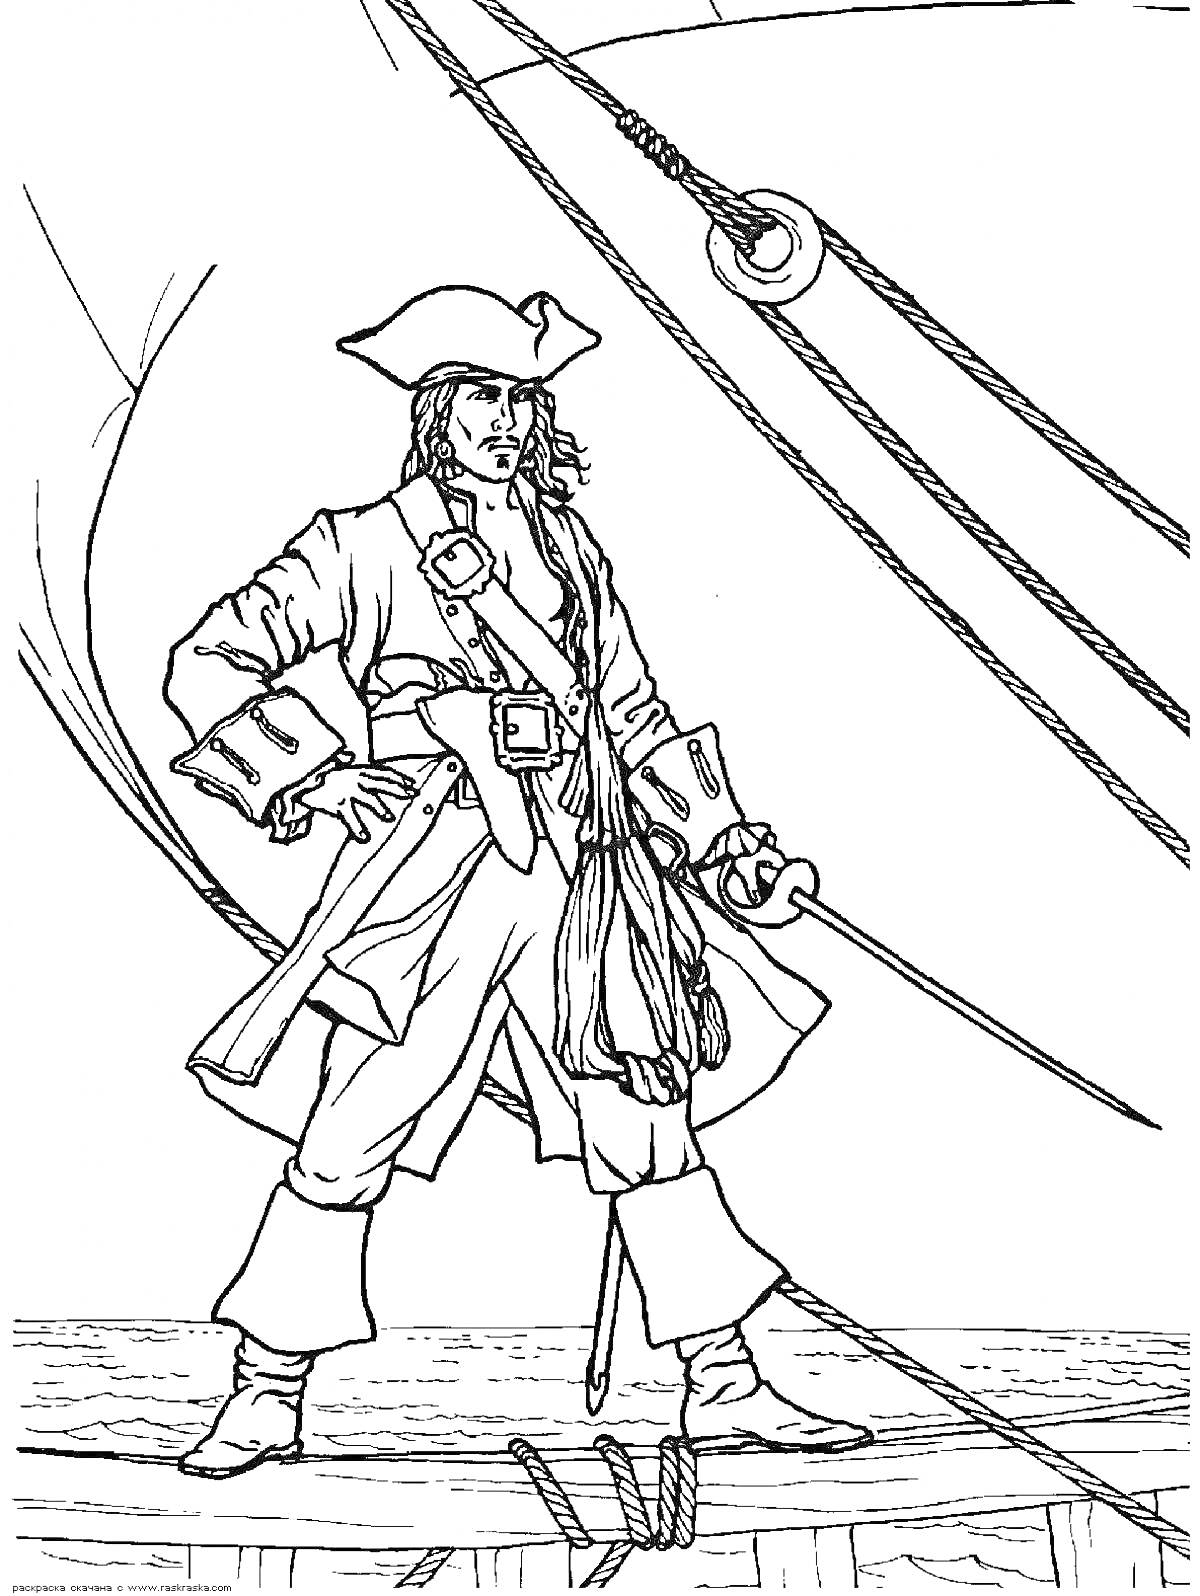 Раскраска Пират на палубе корабля с саблей, фалами и поручнями